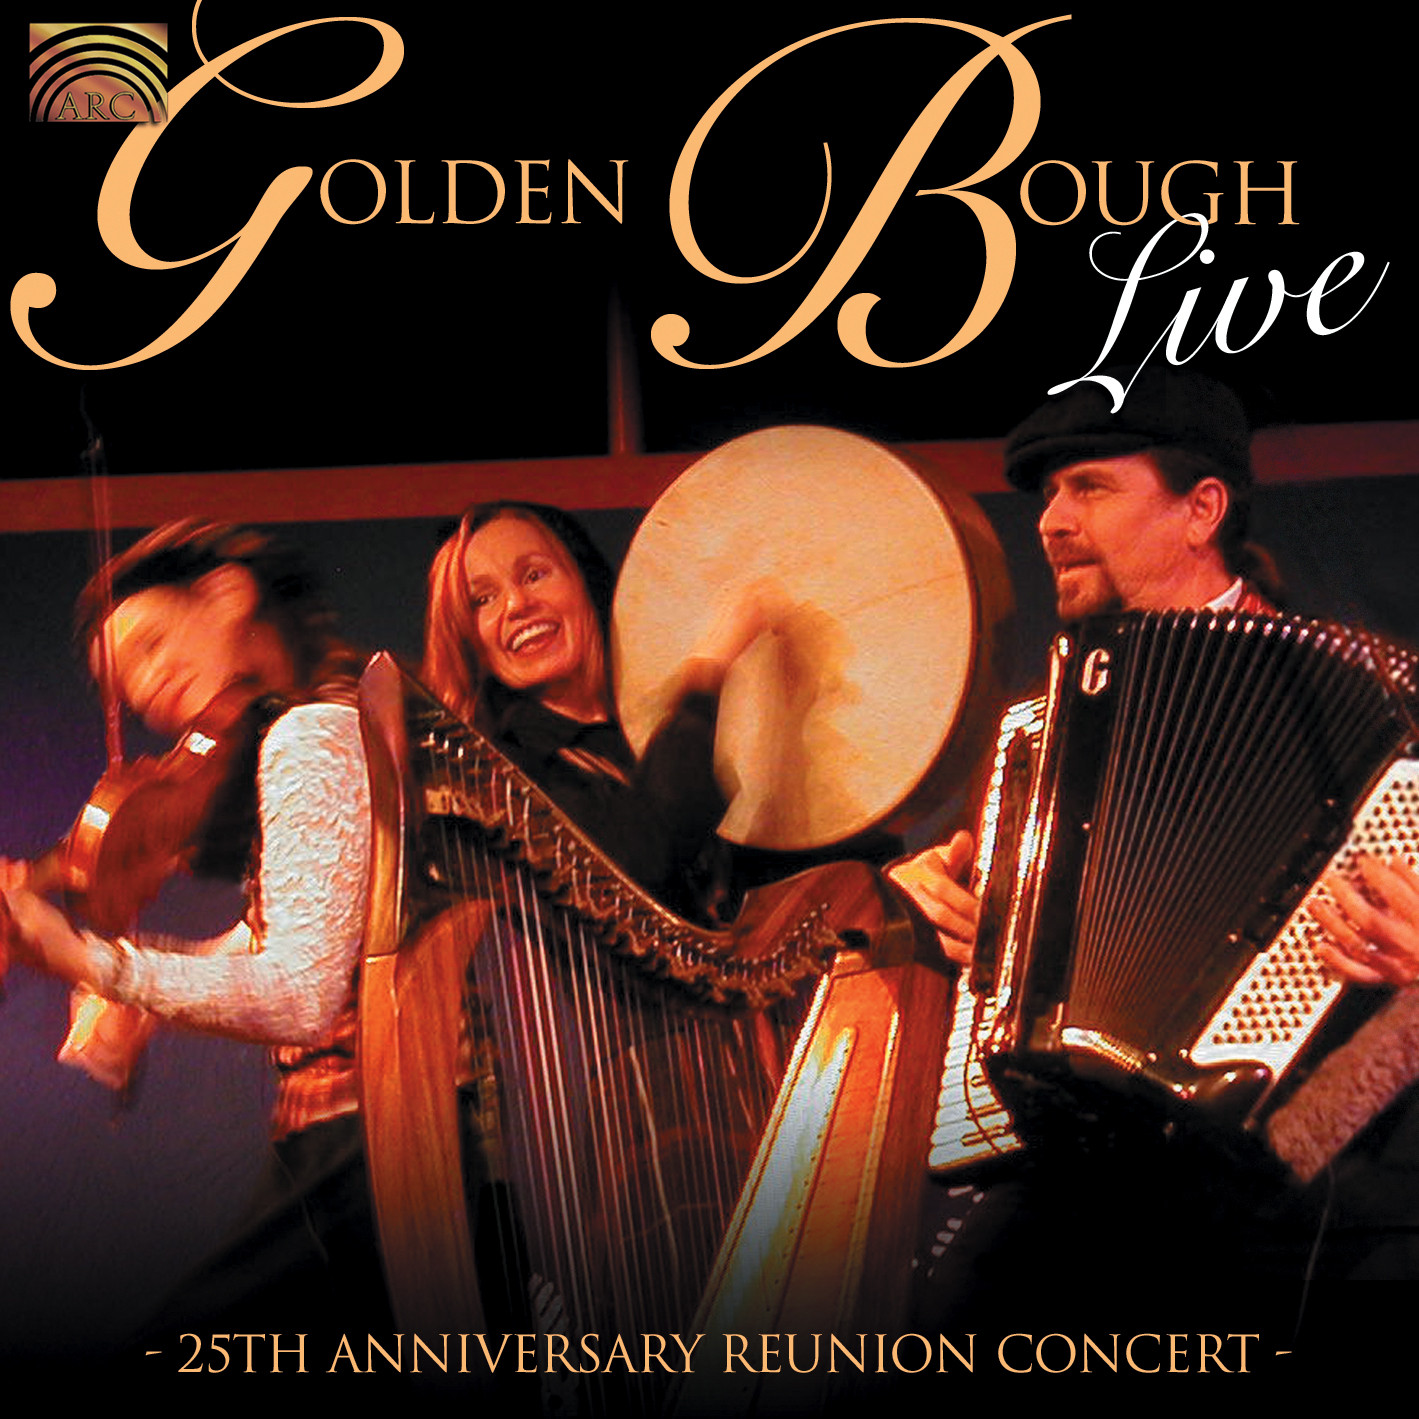 EUCD2008 Golden Bough Live - 25th Anniversary Reunion Concert